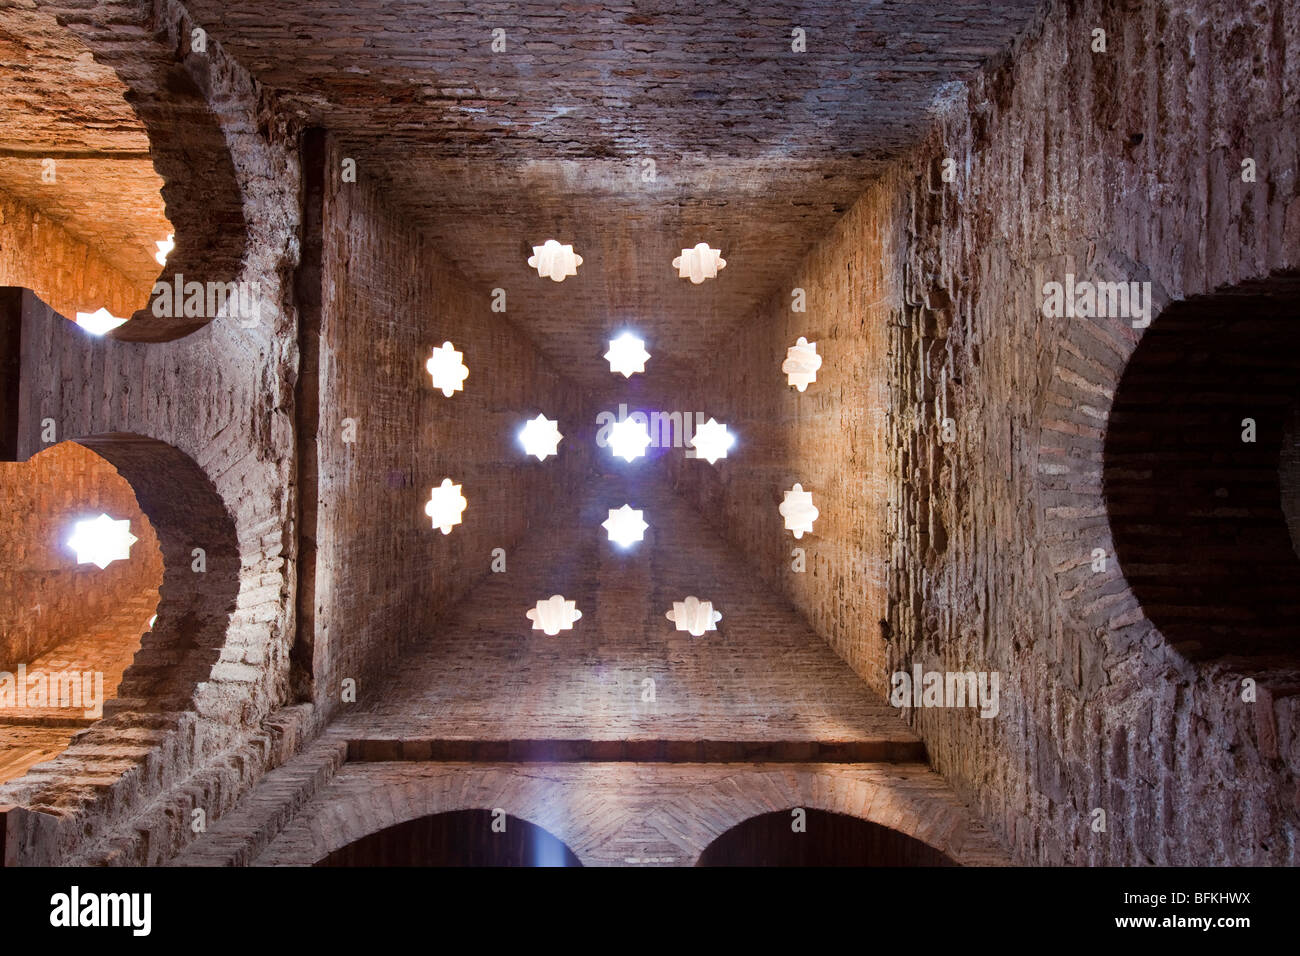 Dôme en brique de Bath, à l'Alhambra, Grenade, Espagne Banque D'Images